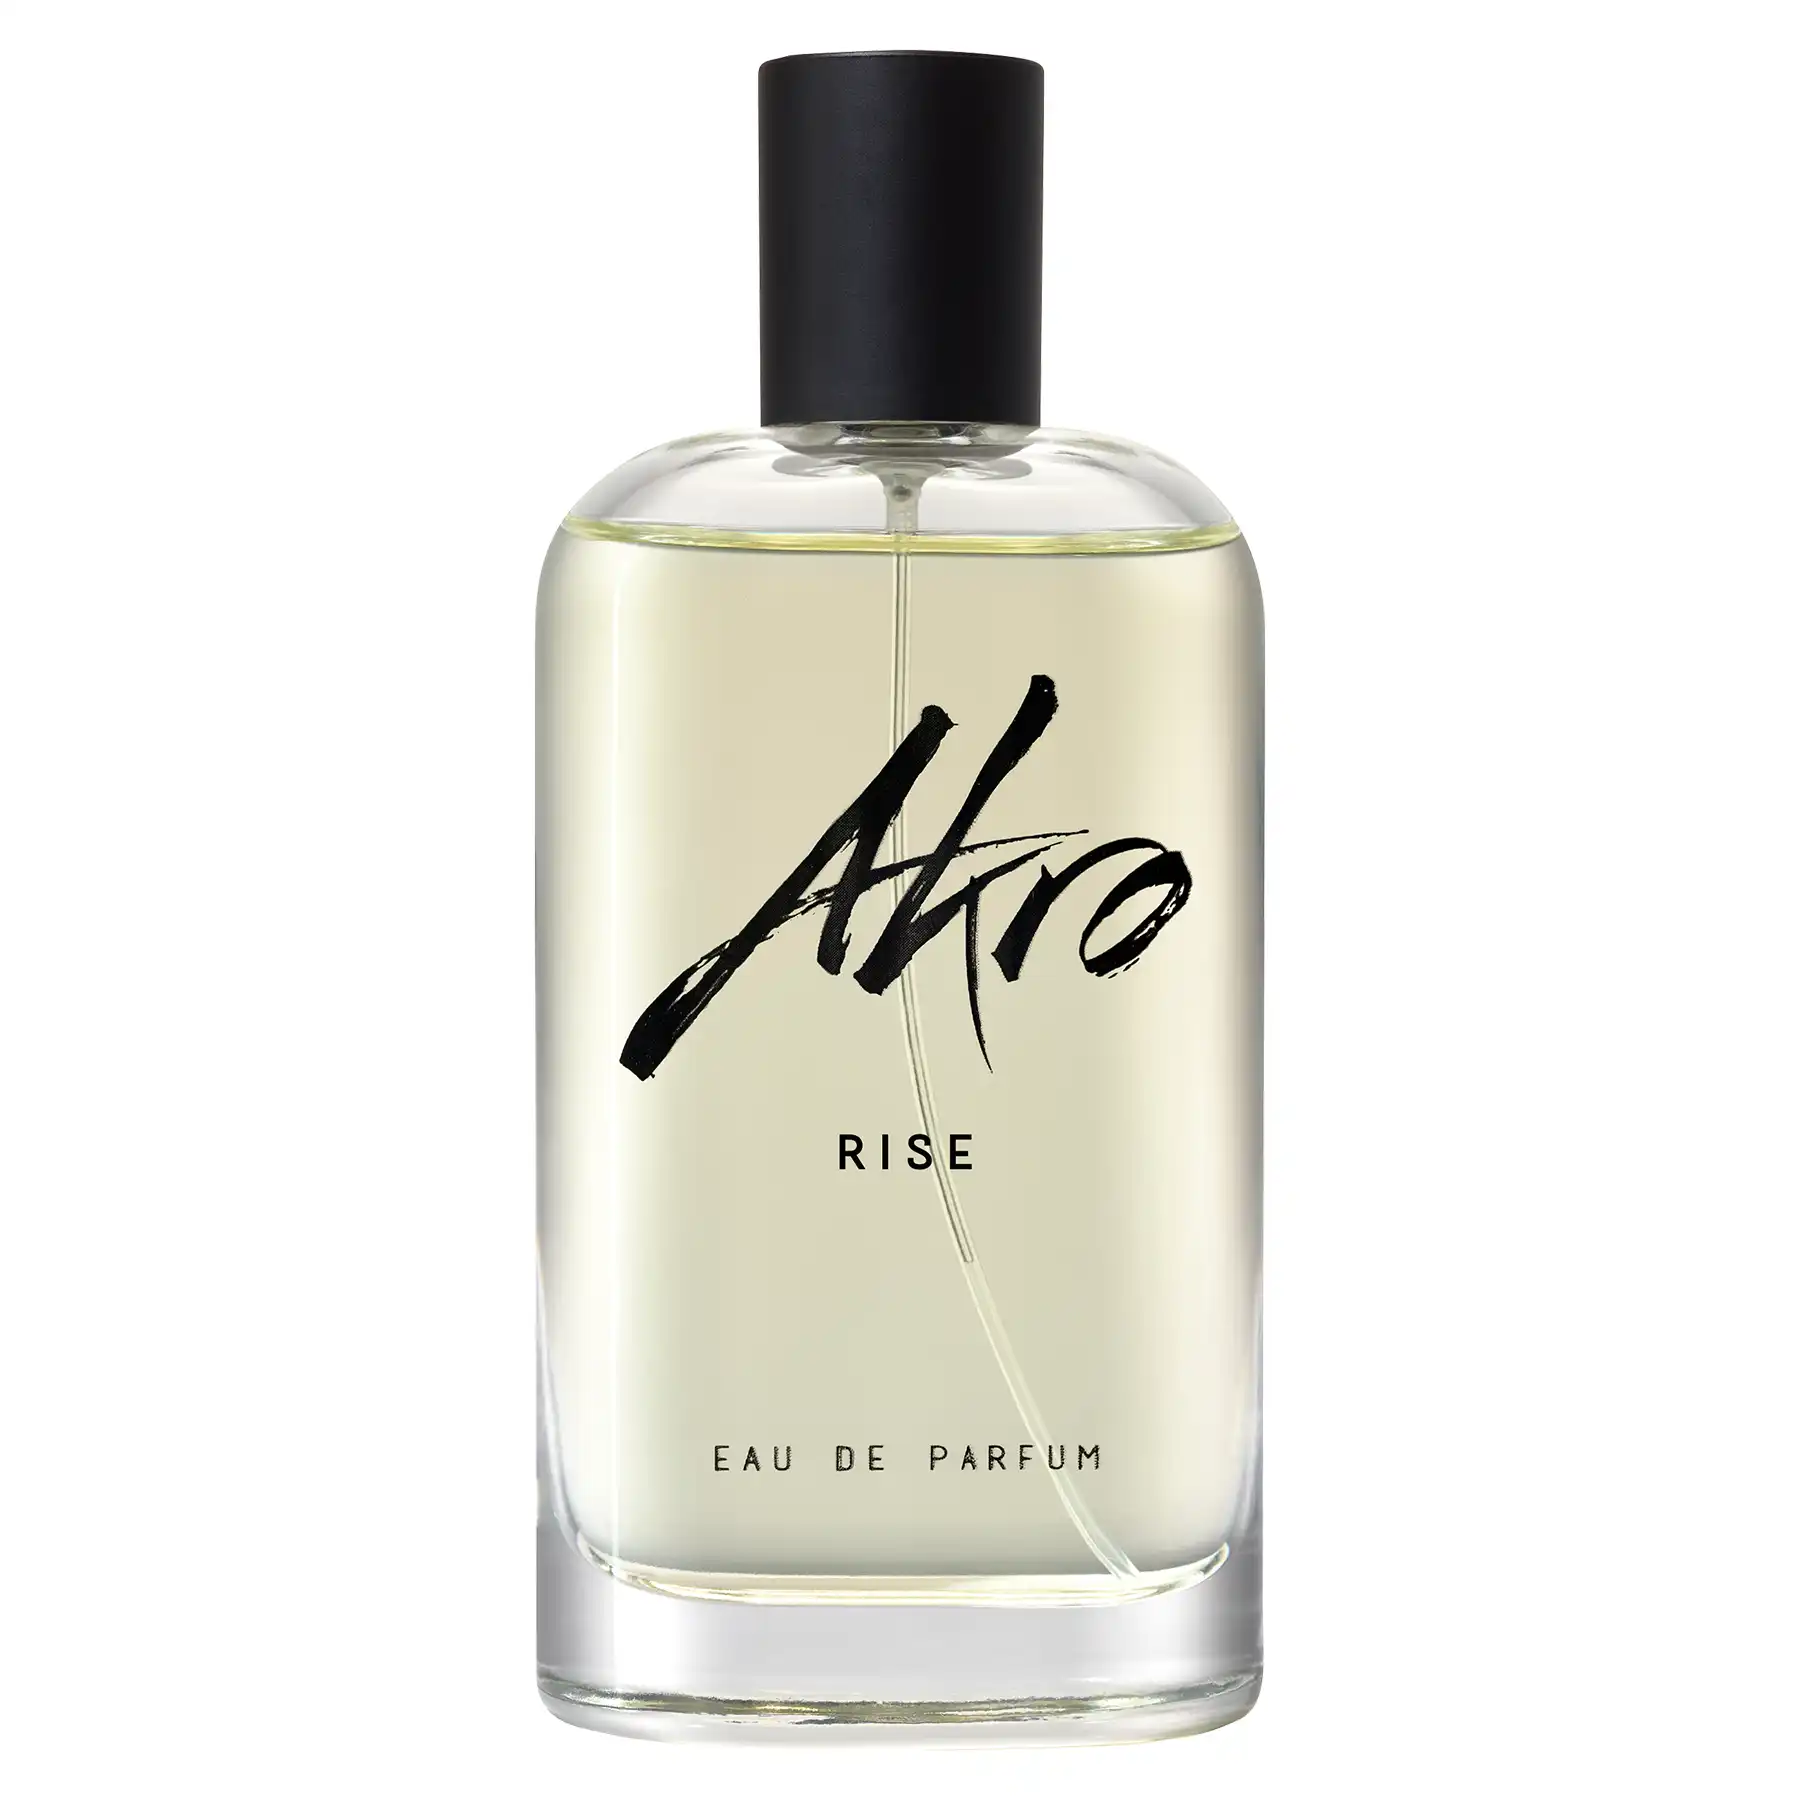 Akro Rise Eau de Parfum 100ml